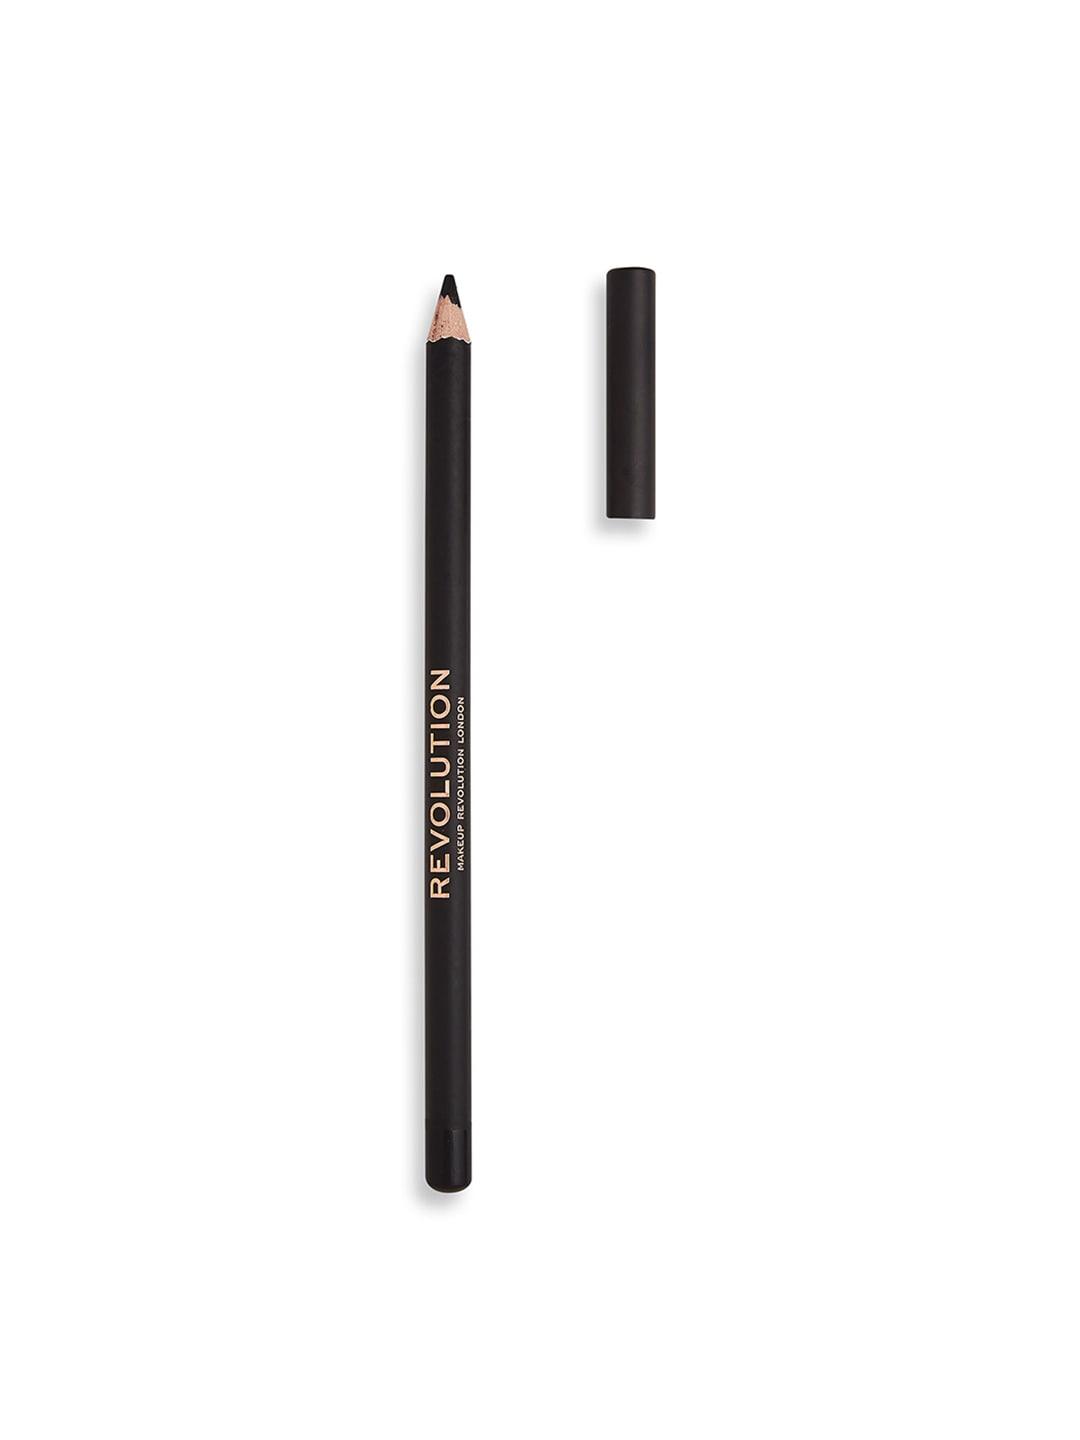 Makeup Revolution London Highly-Pigmented Matte Kohl Eyeliner Pencil - Black